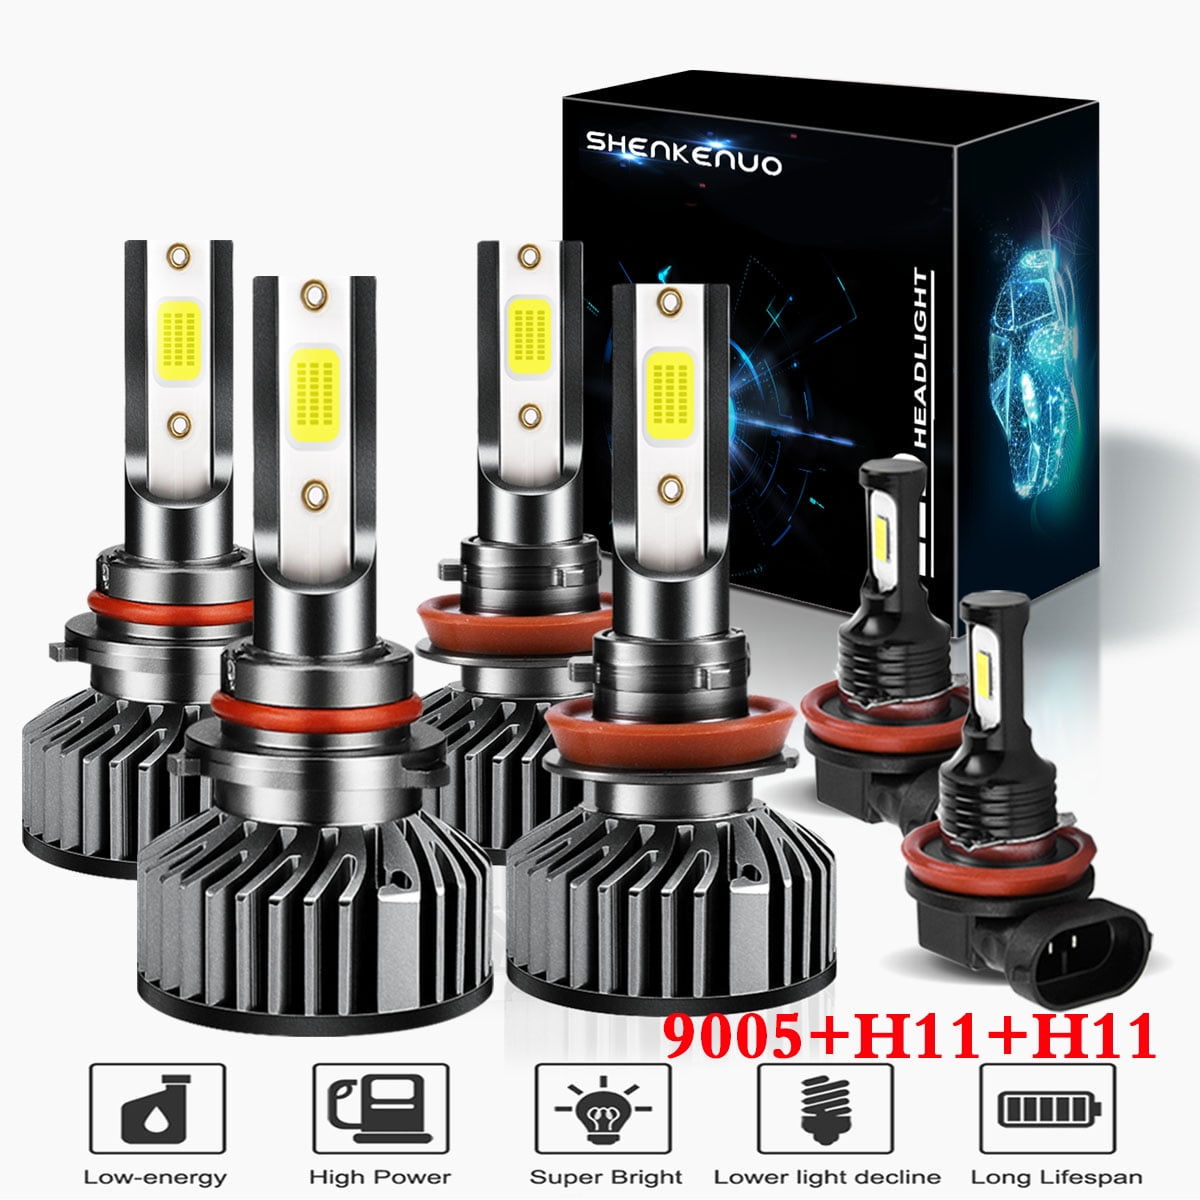 LED Headlight Kit 9005 HB3 6000K Bulbs High Beam for TOYOTA Highlander 2011-2019